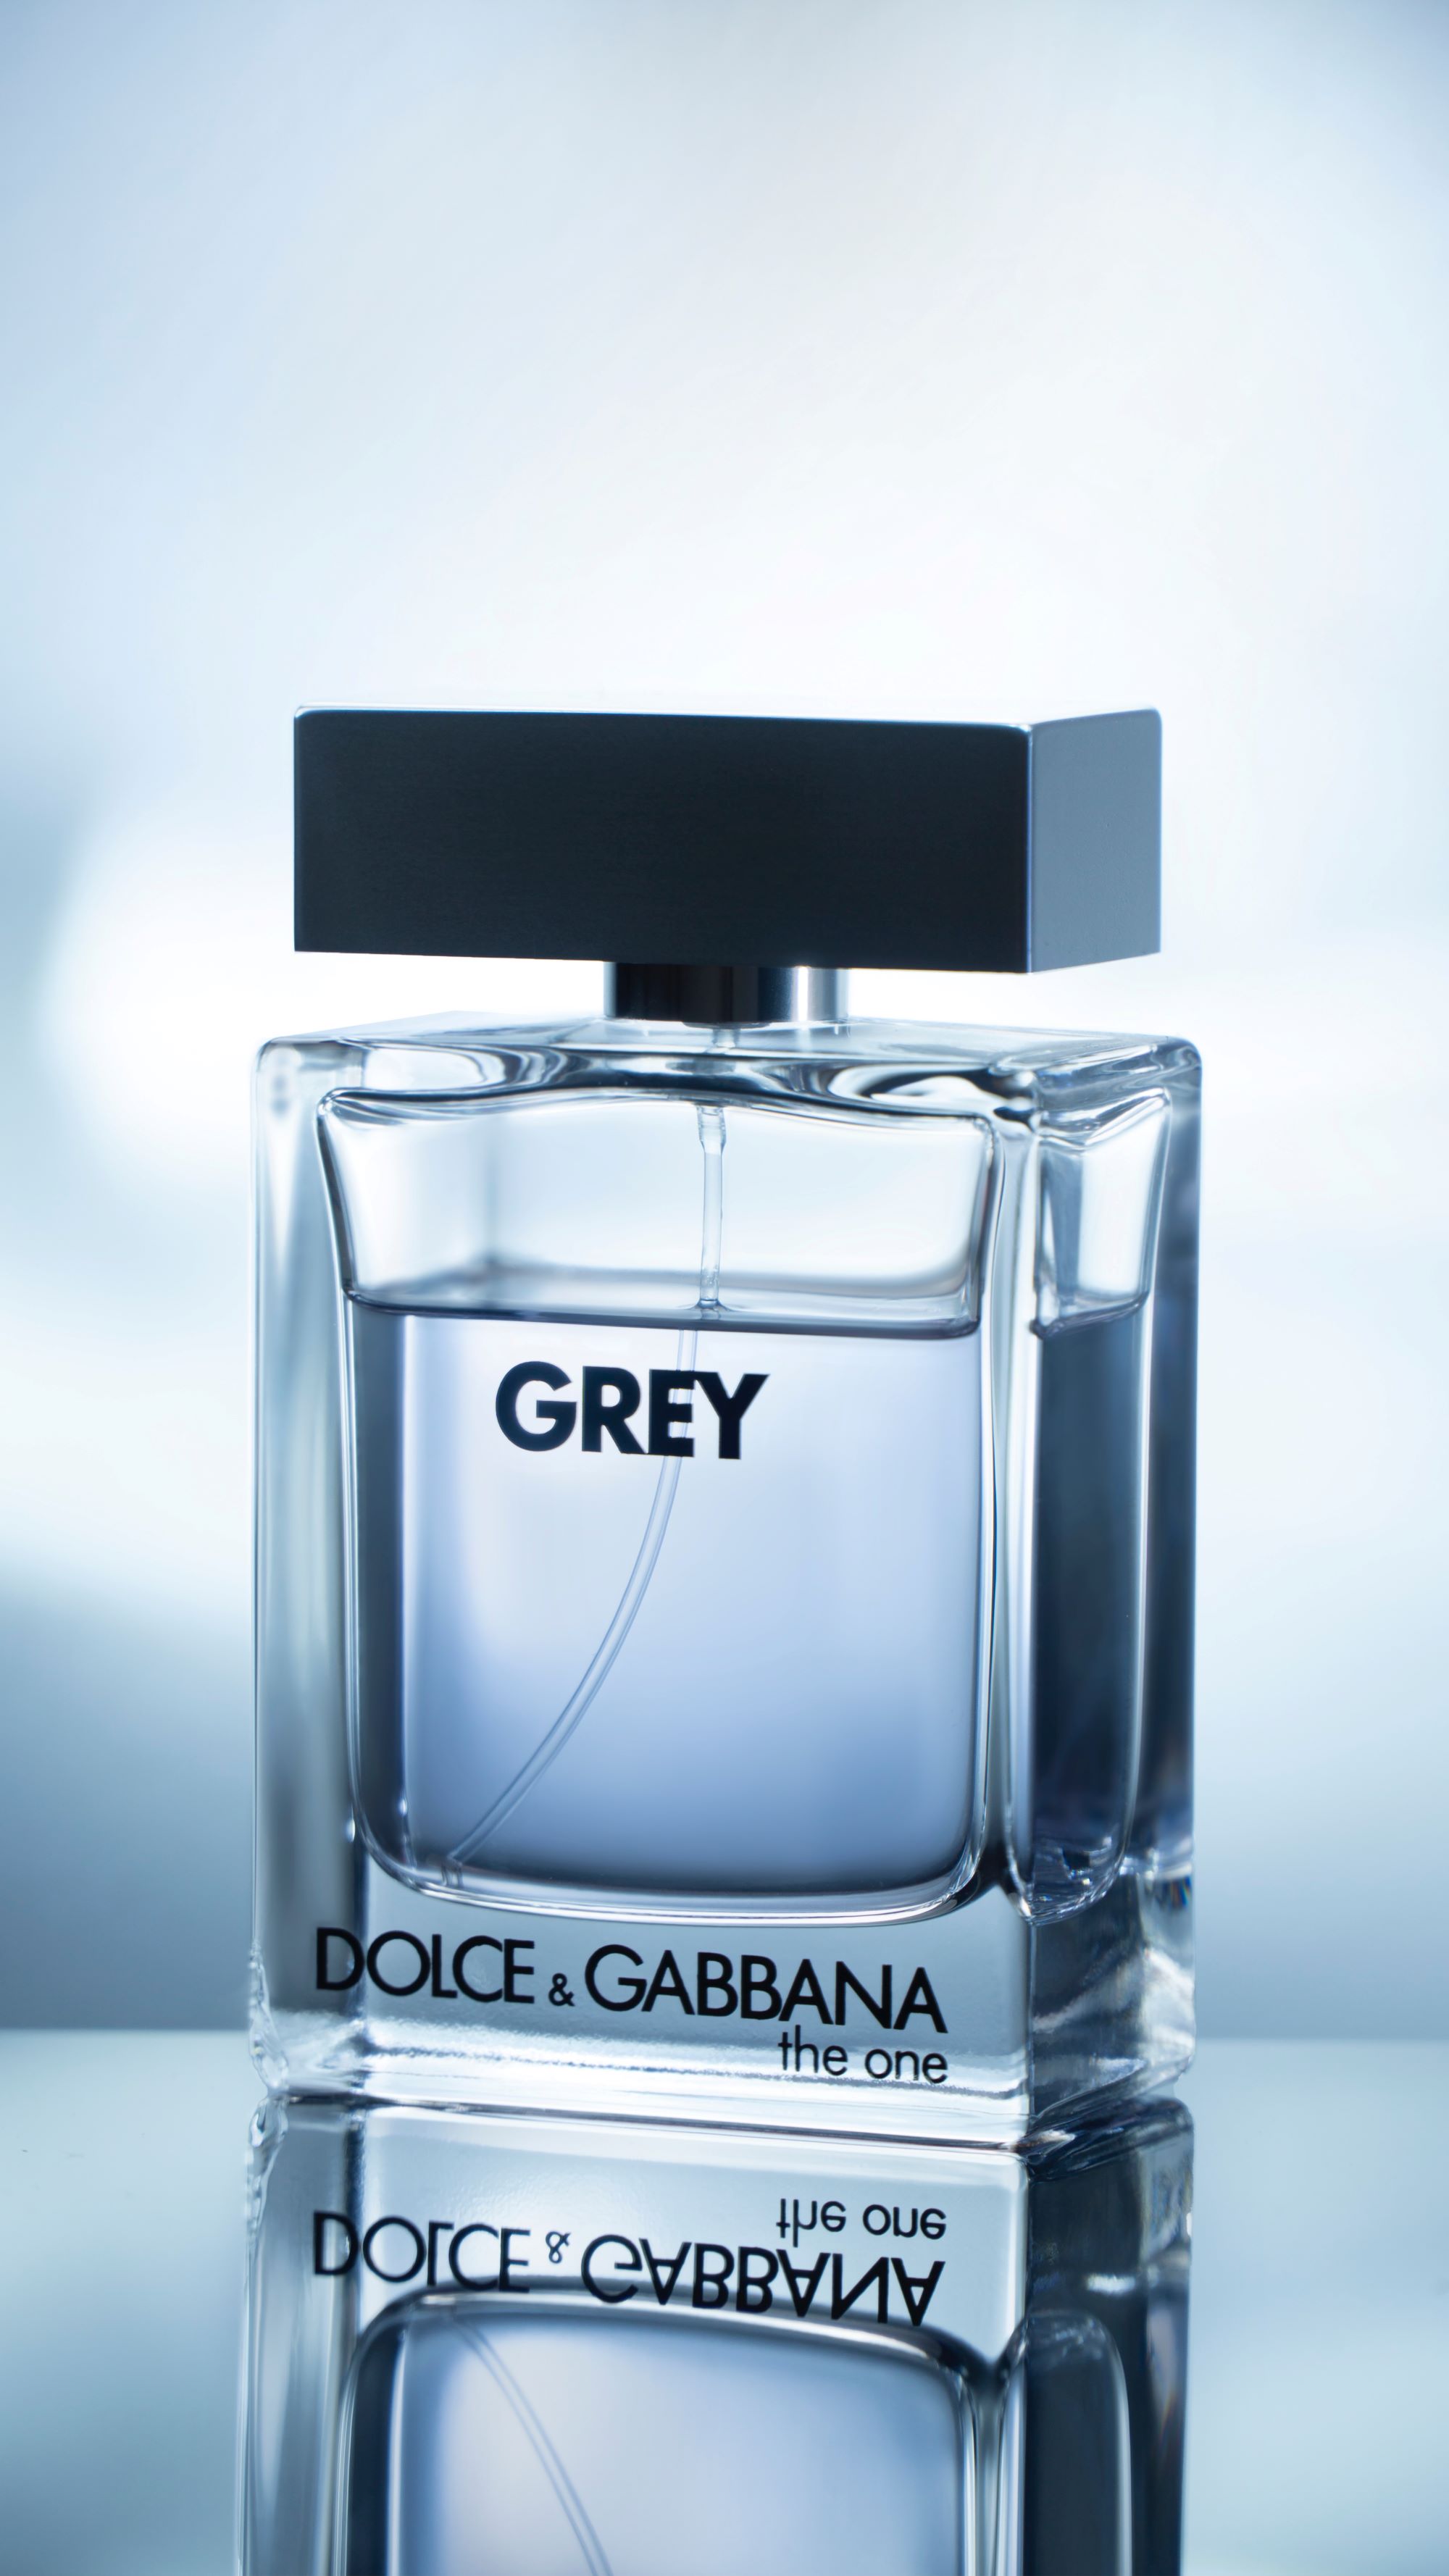 Dolce & Gabbana Fragrance